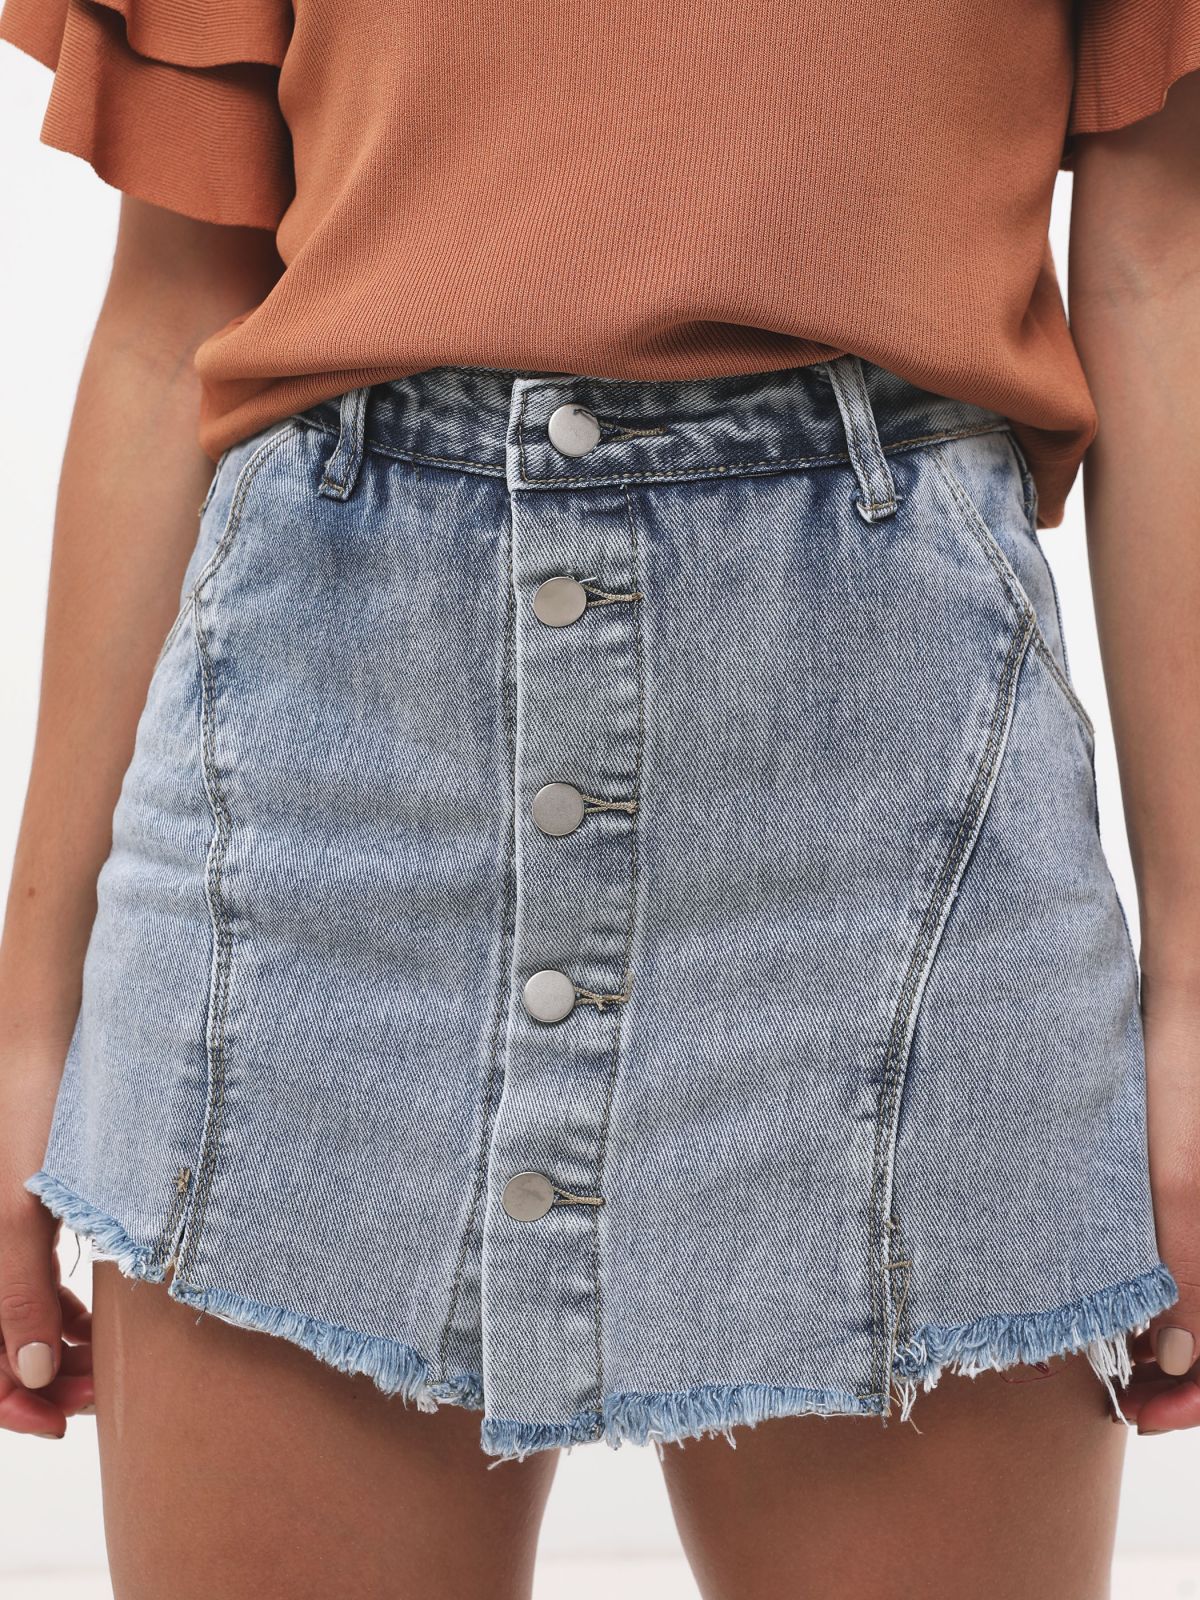  מכנסי חצאית ג'ינס עם כפתורים של YANGA